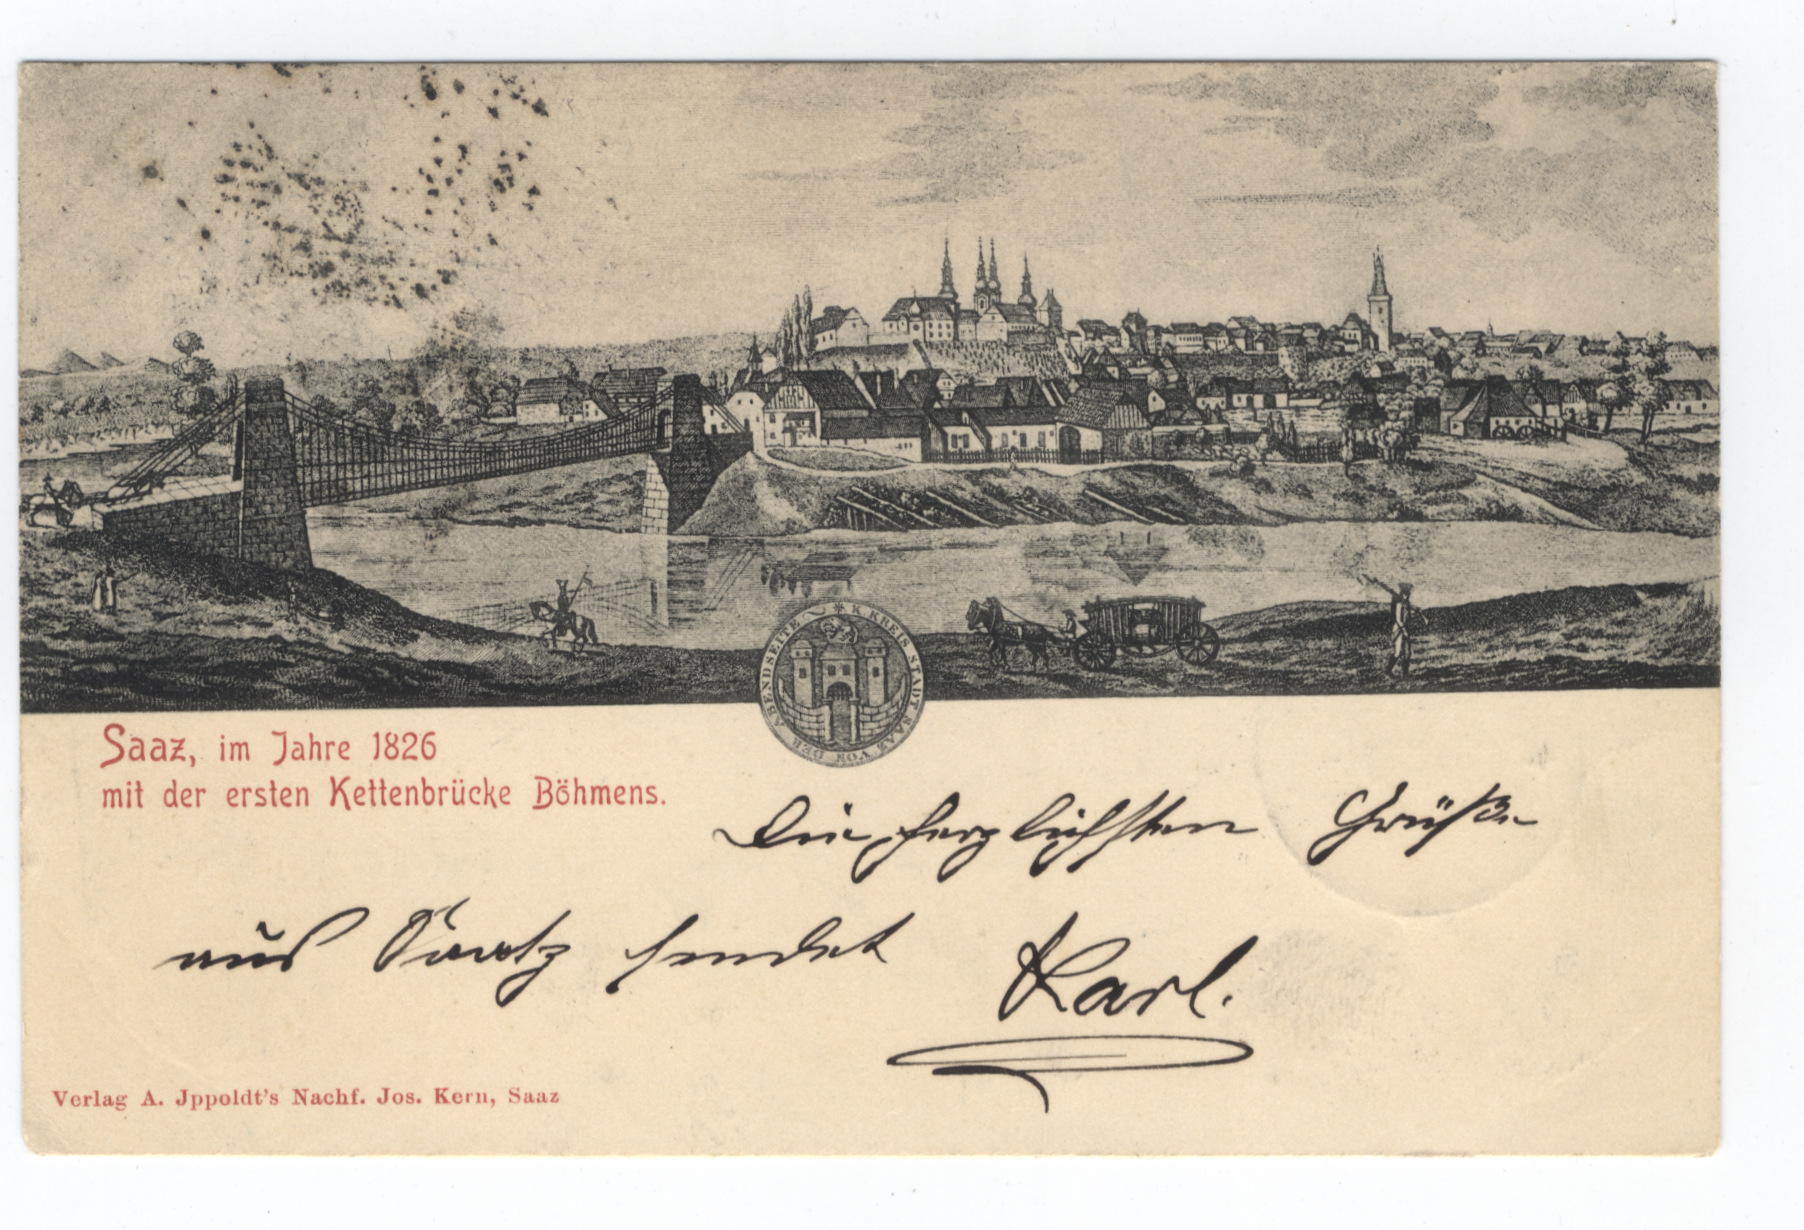 Řetězový most na pohlednici. Zobrazení, které doprovázelo i brožuru vydanou roku 1826 k položení základního kamene mostu.